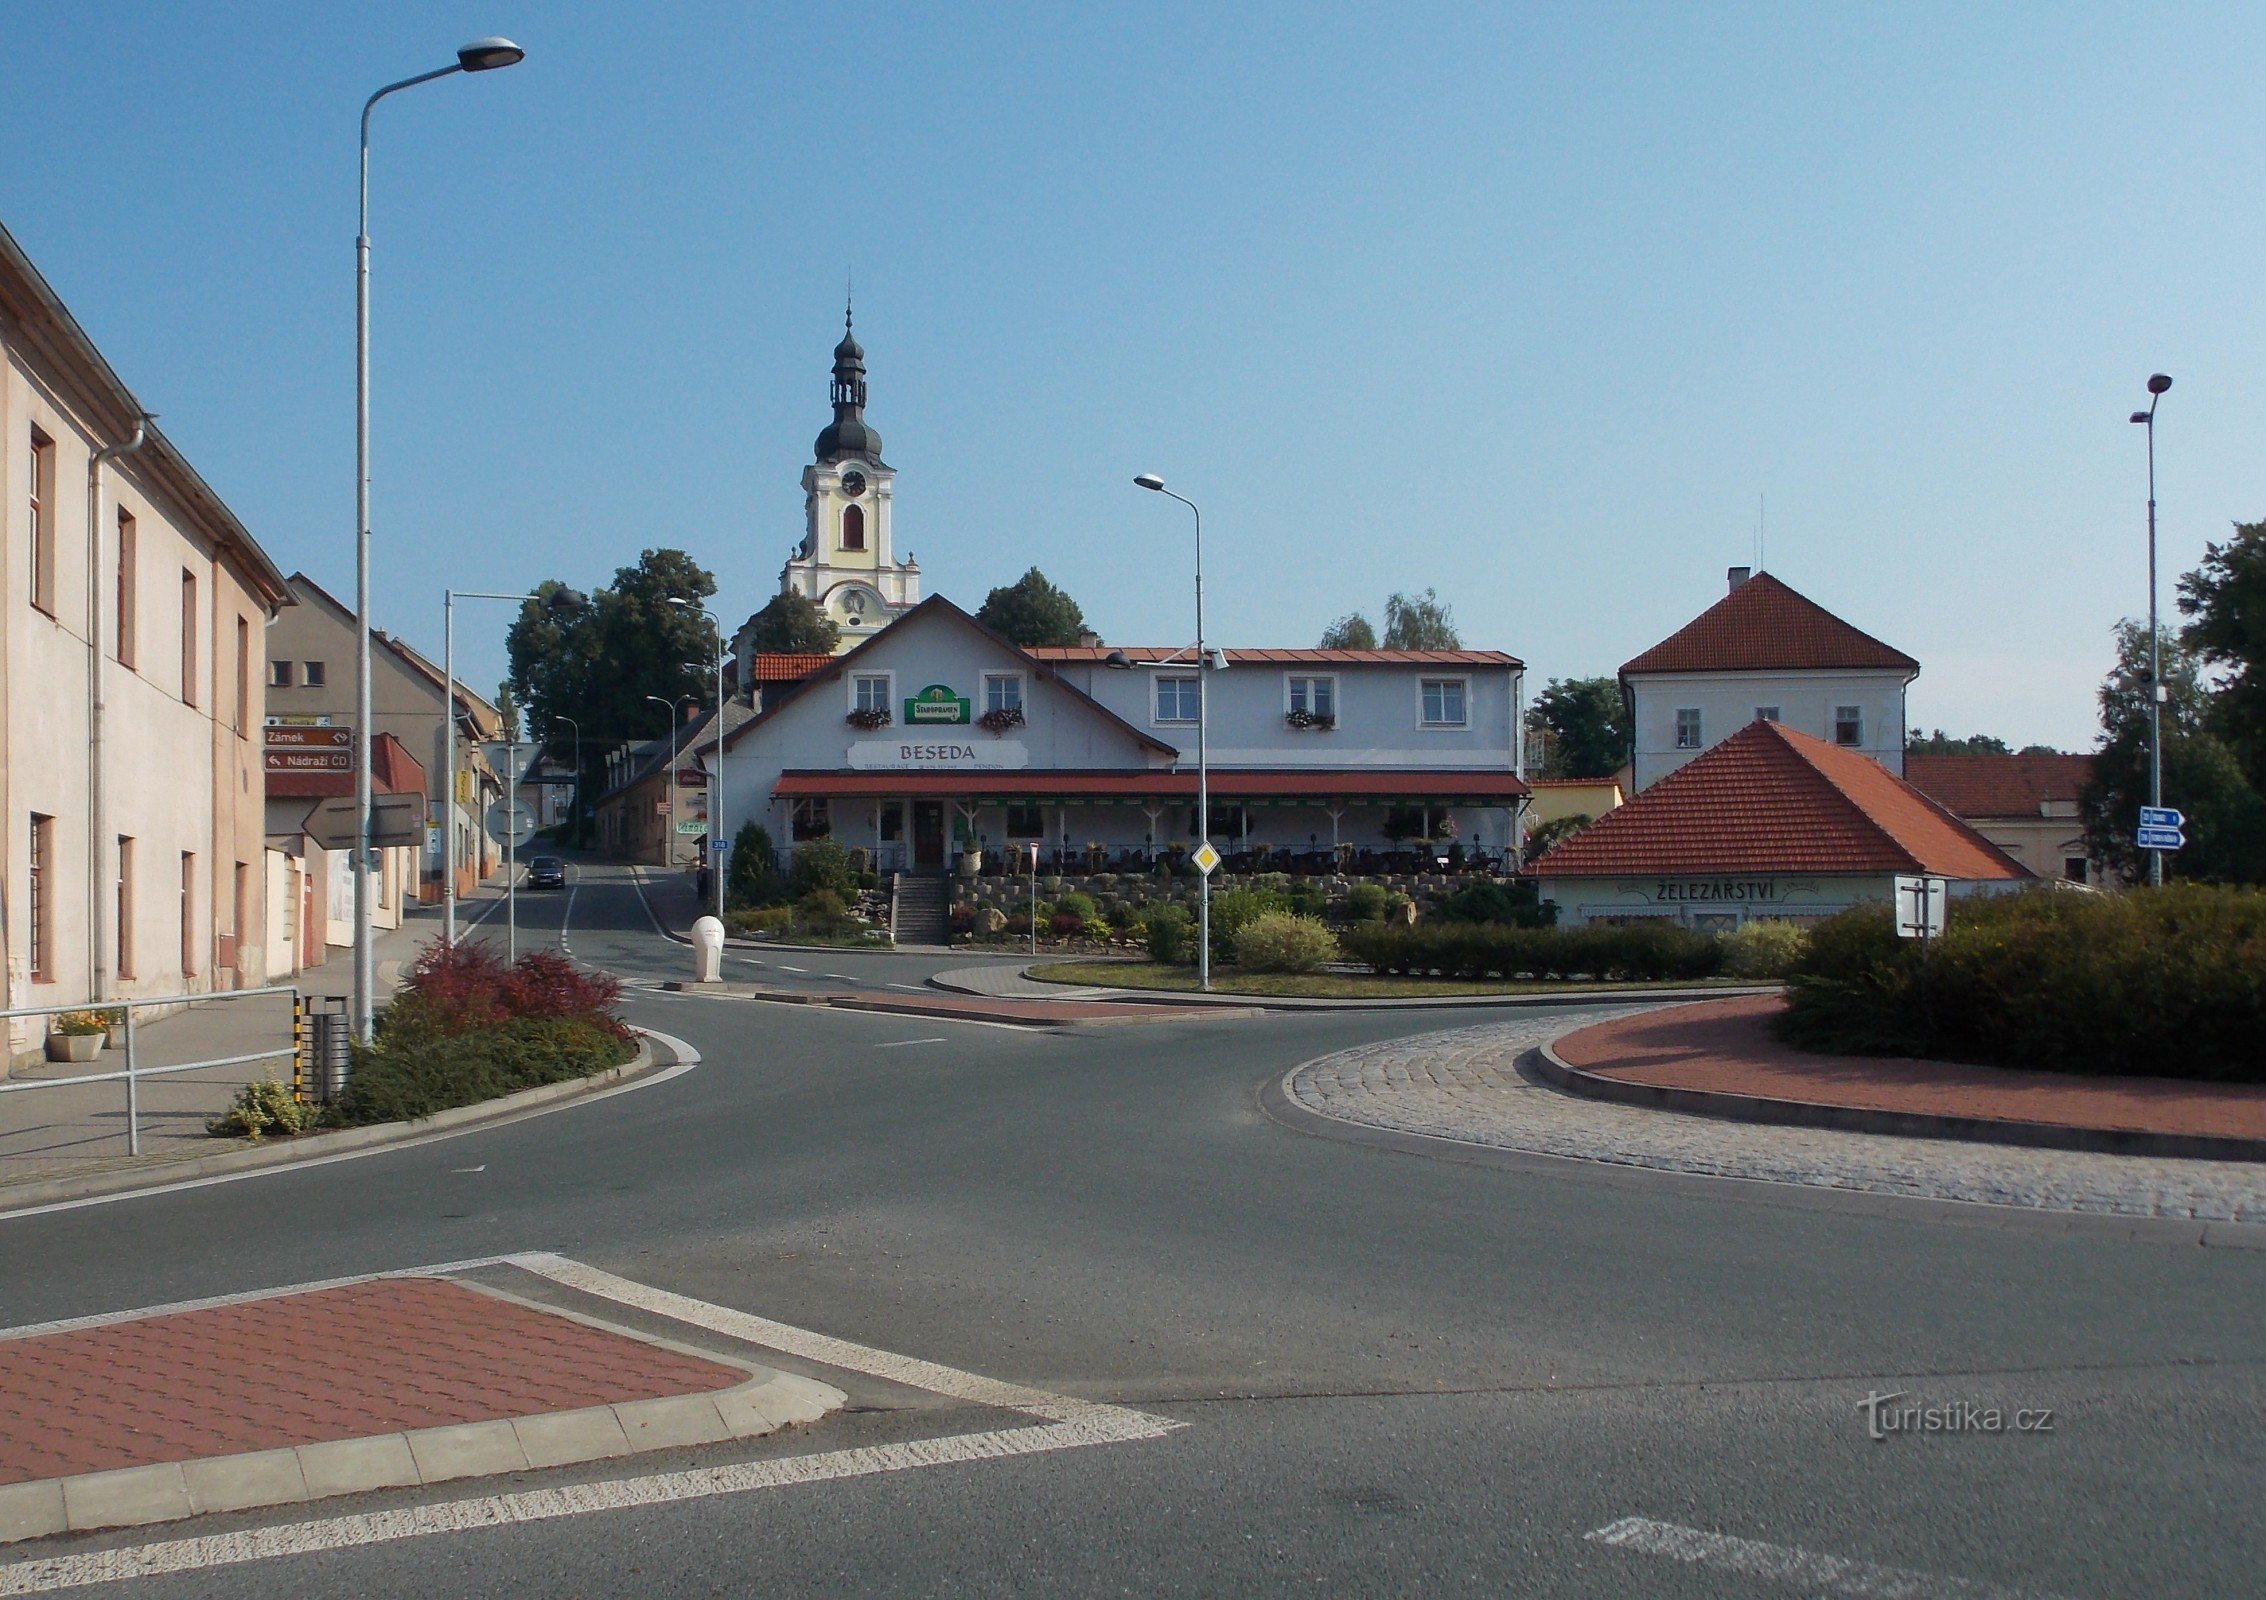 Până la orașul Častolovice